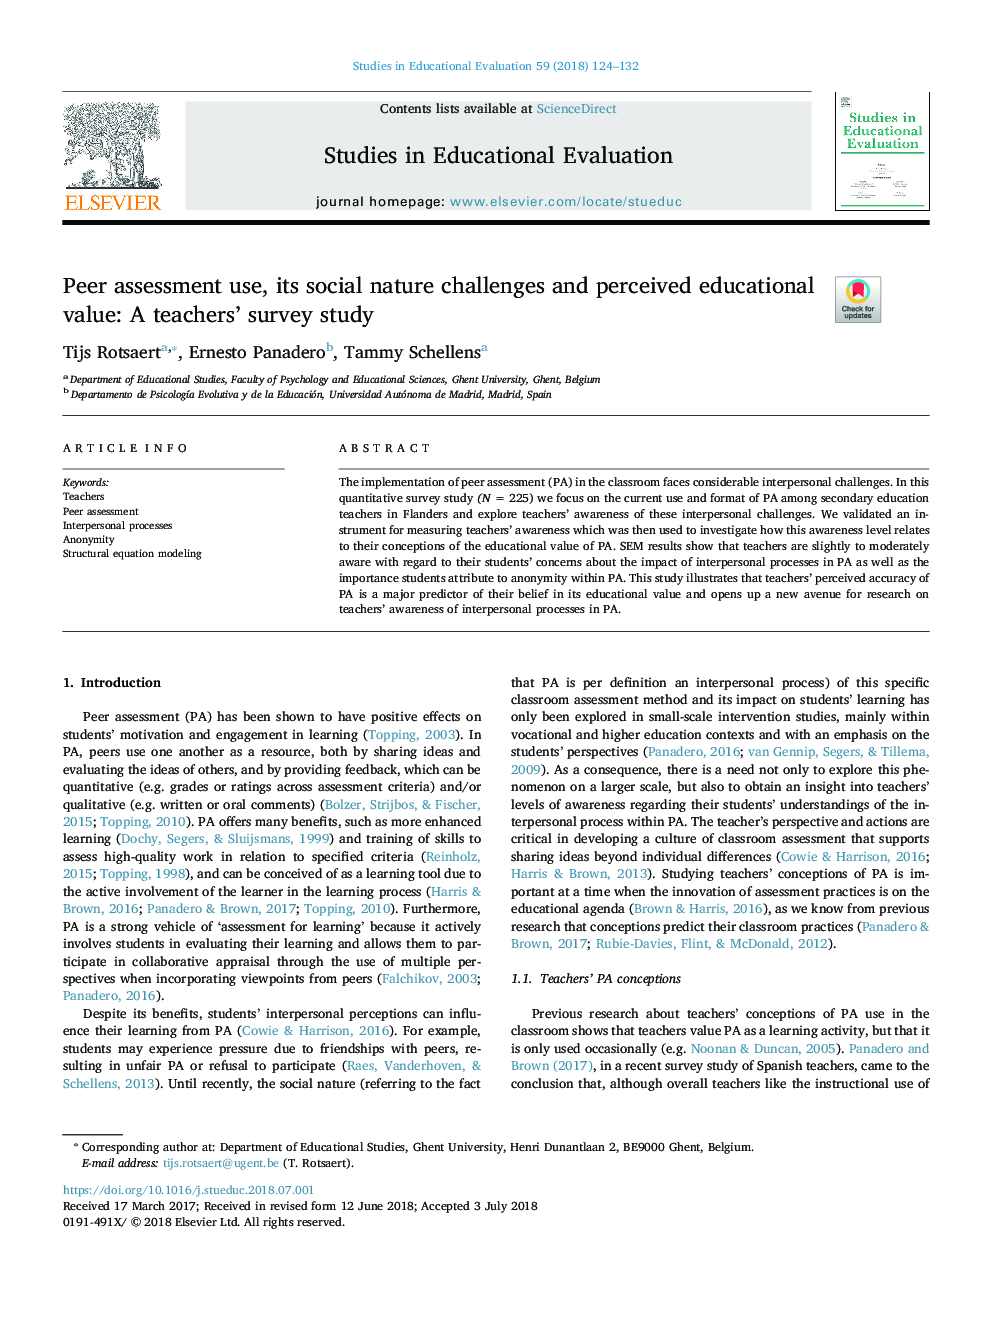 ارزیابی همکارانه، چالش های طبیعت اجتماعی و ارزش آموزشی درک شده: یک مطالعه نظرسنجی معلمان 